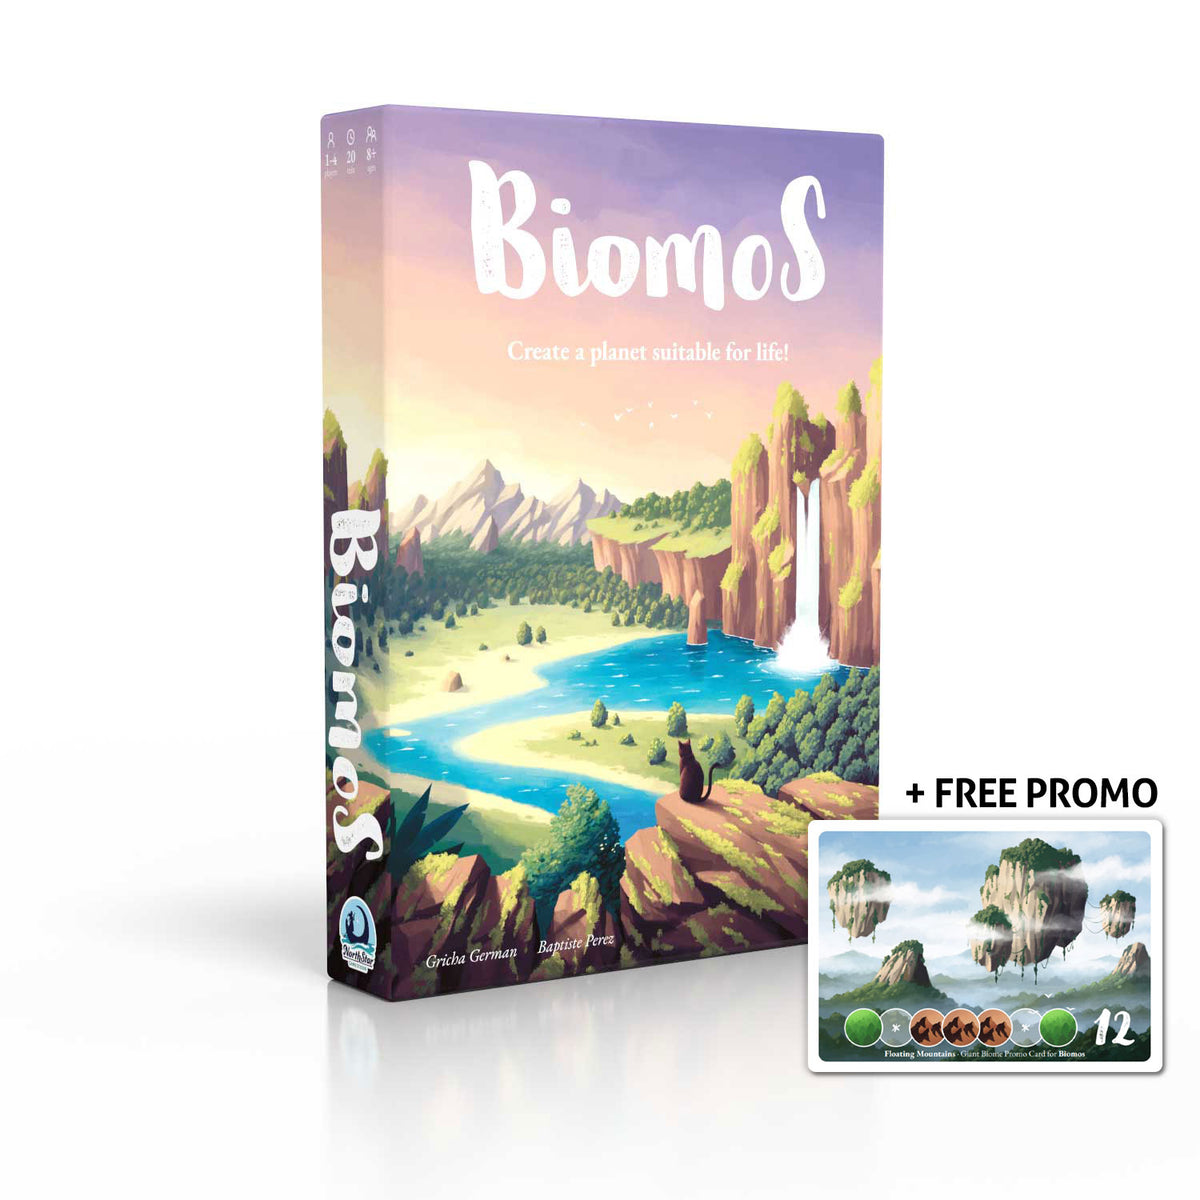 Biomos - includes Free Promo